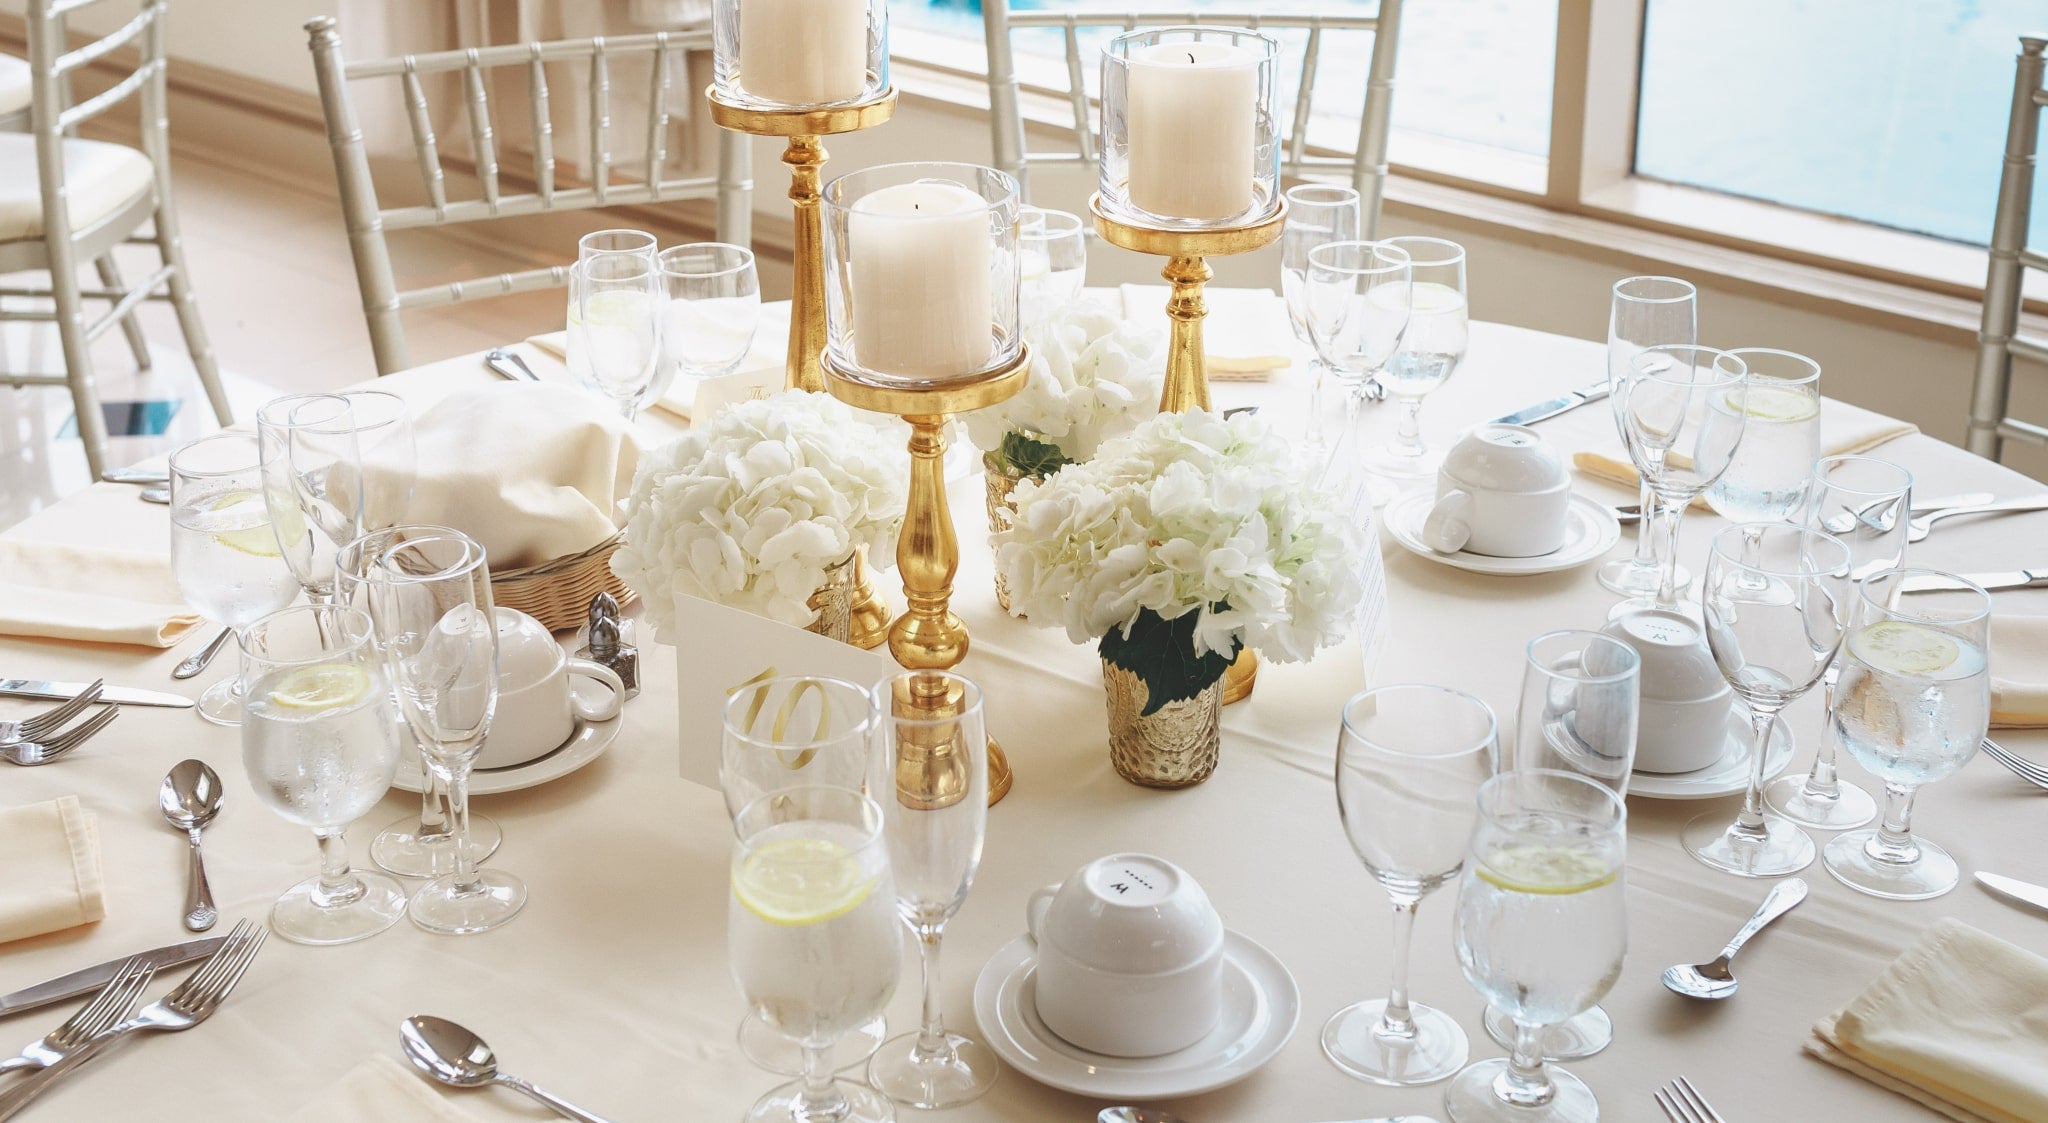 White & gold tableware theme